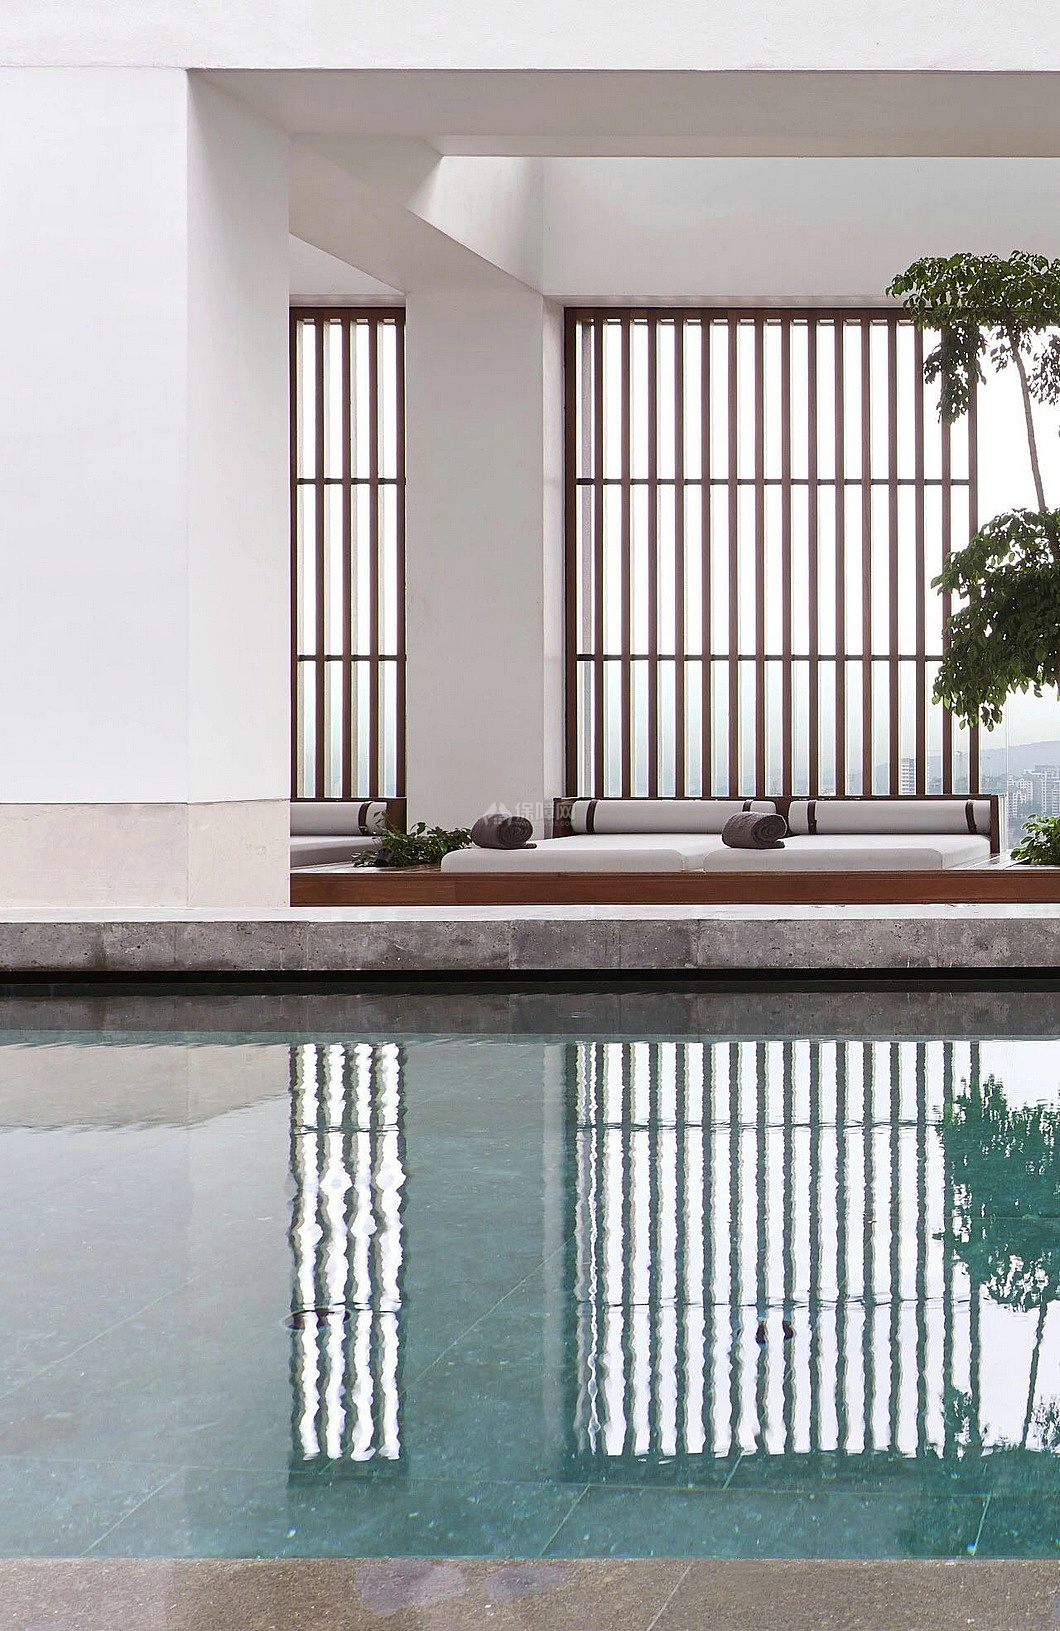 Alila Bangsar酒店之屋顶户外泳池整体效果图